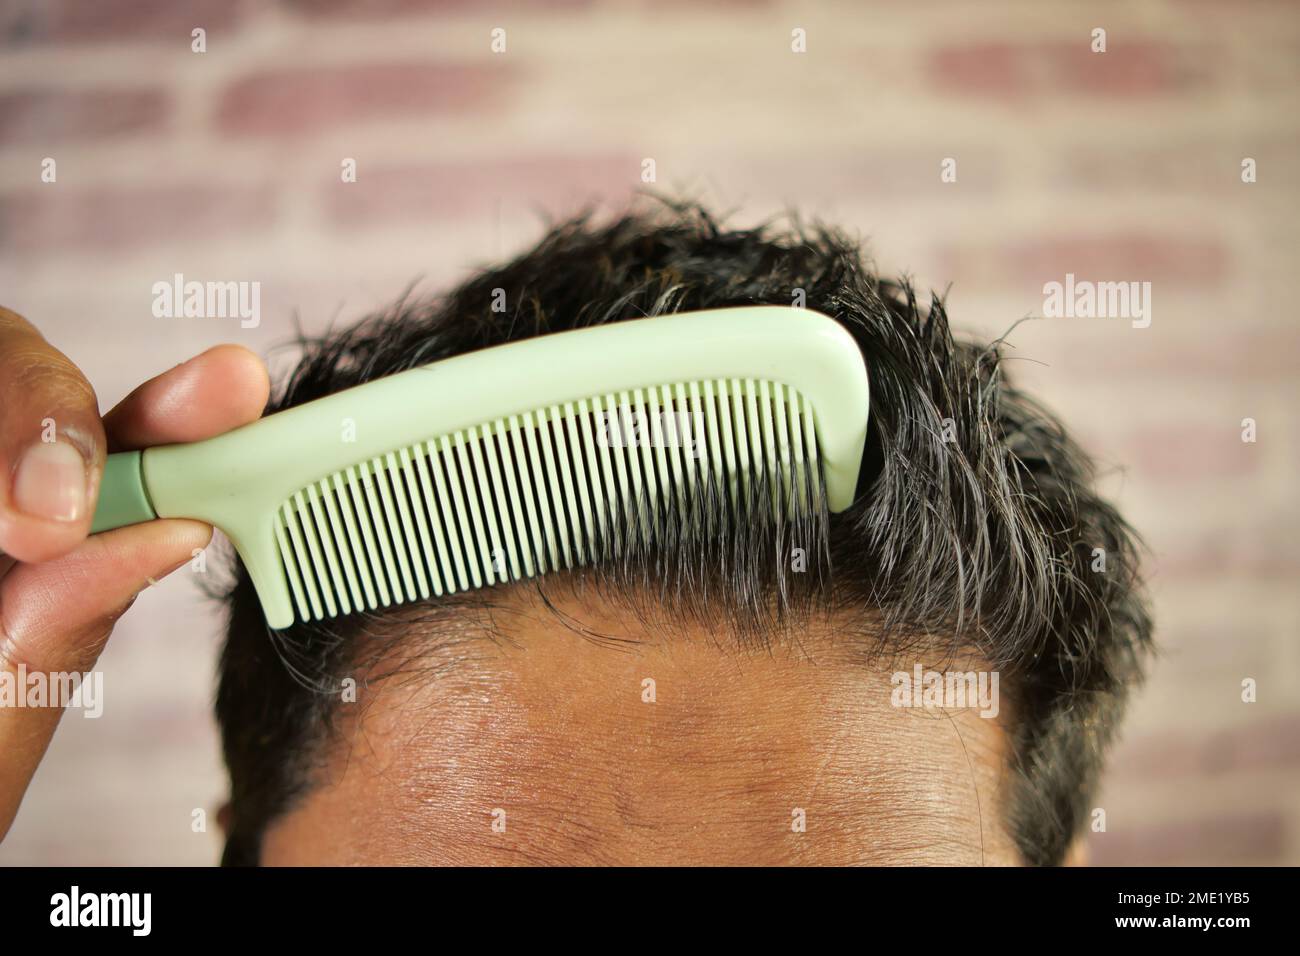 homme coiffant les cheveux avec le sabot en gros plan Banque D'Images